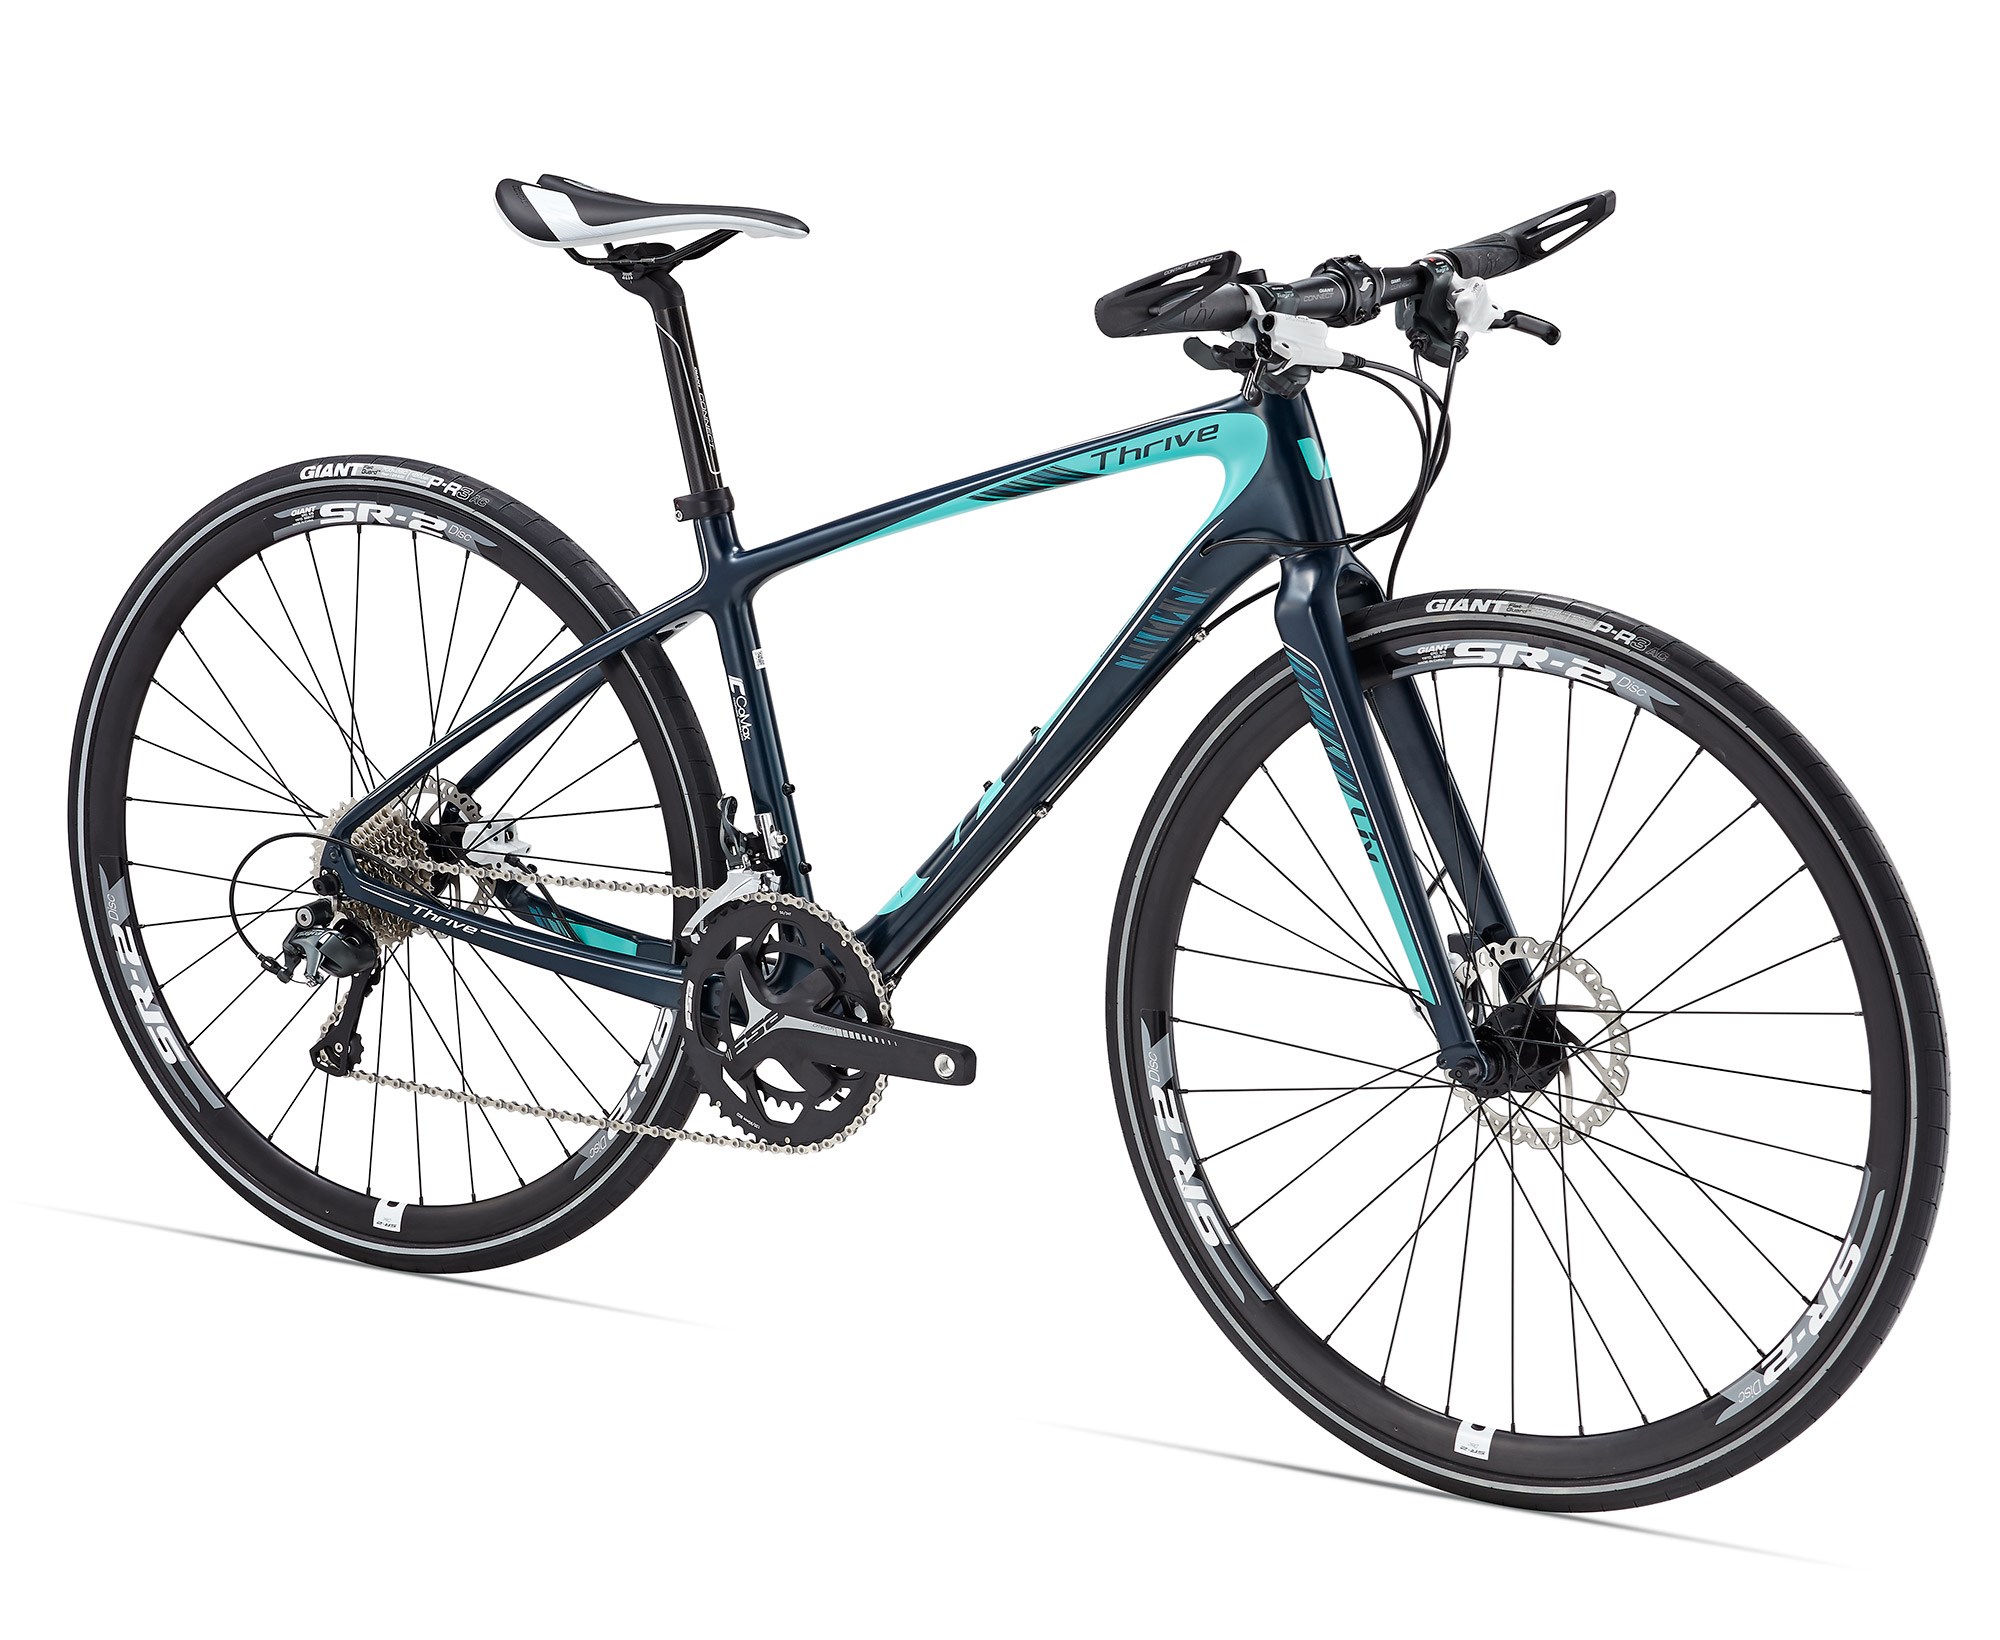 Xe đạp thể thao GIANT Thrive Comax 2 2017 đen xanh black green